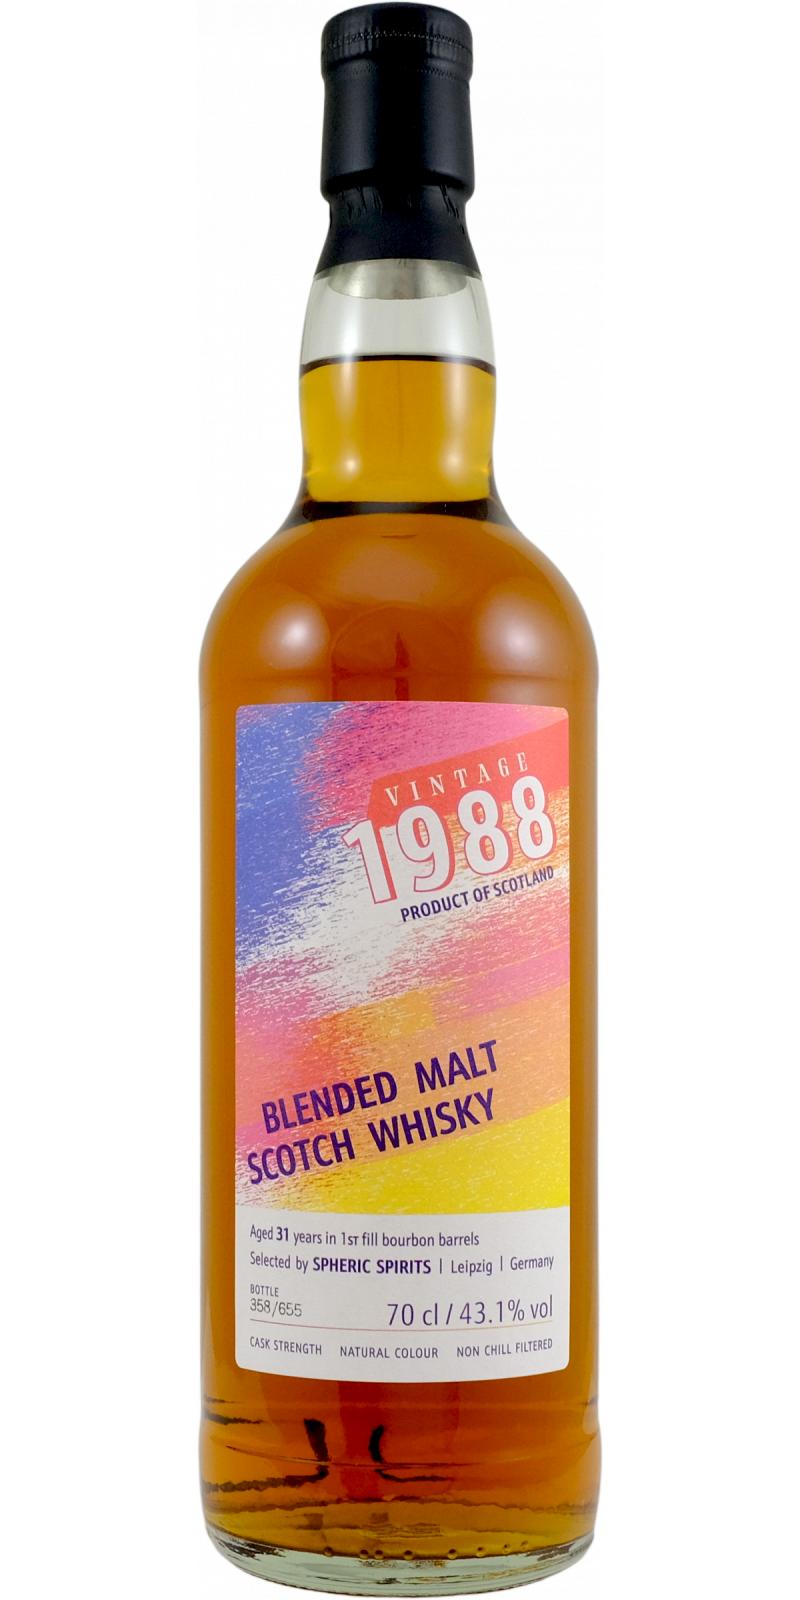 Blended Malt Scotch Whisky 1988 SpSp